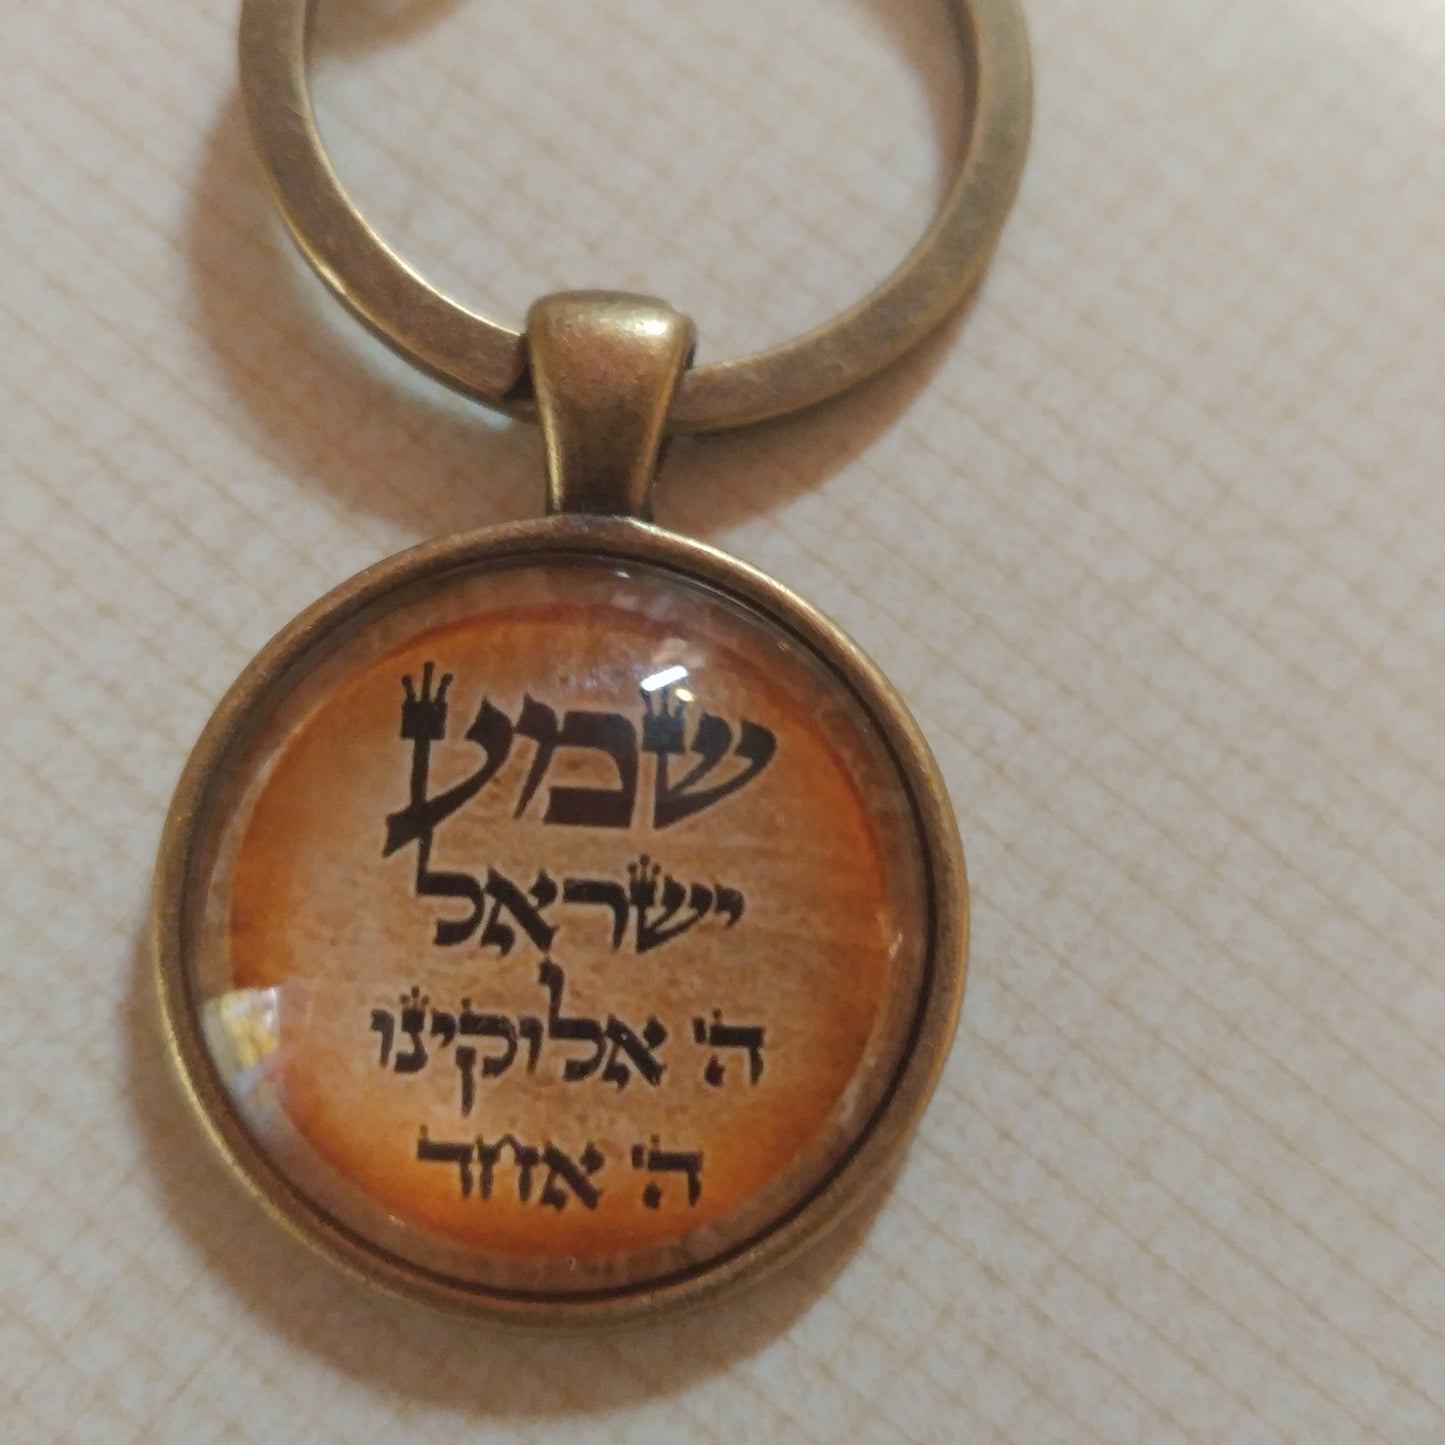 Hebrew - Shema keychain